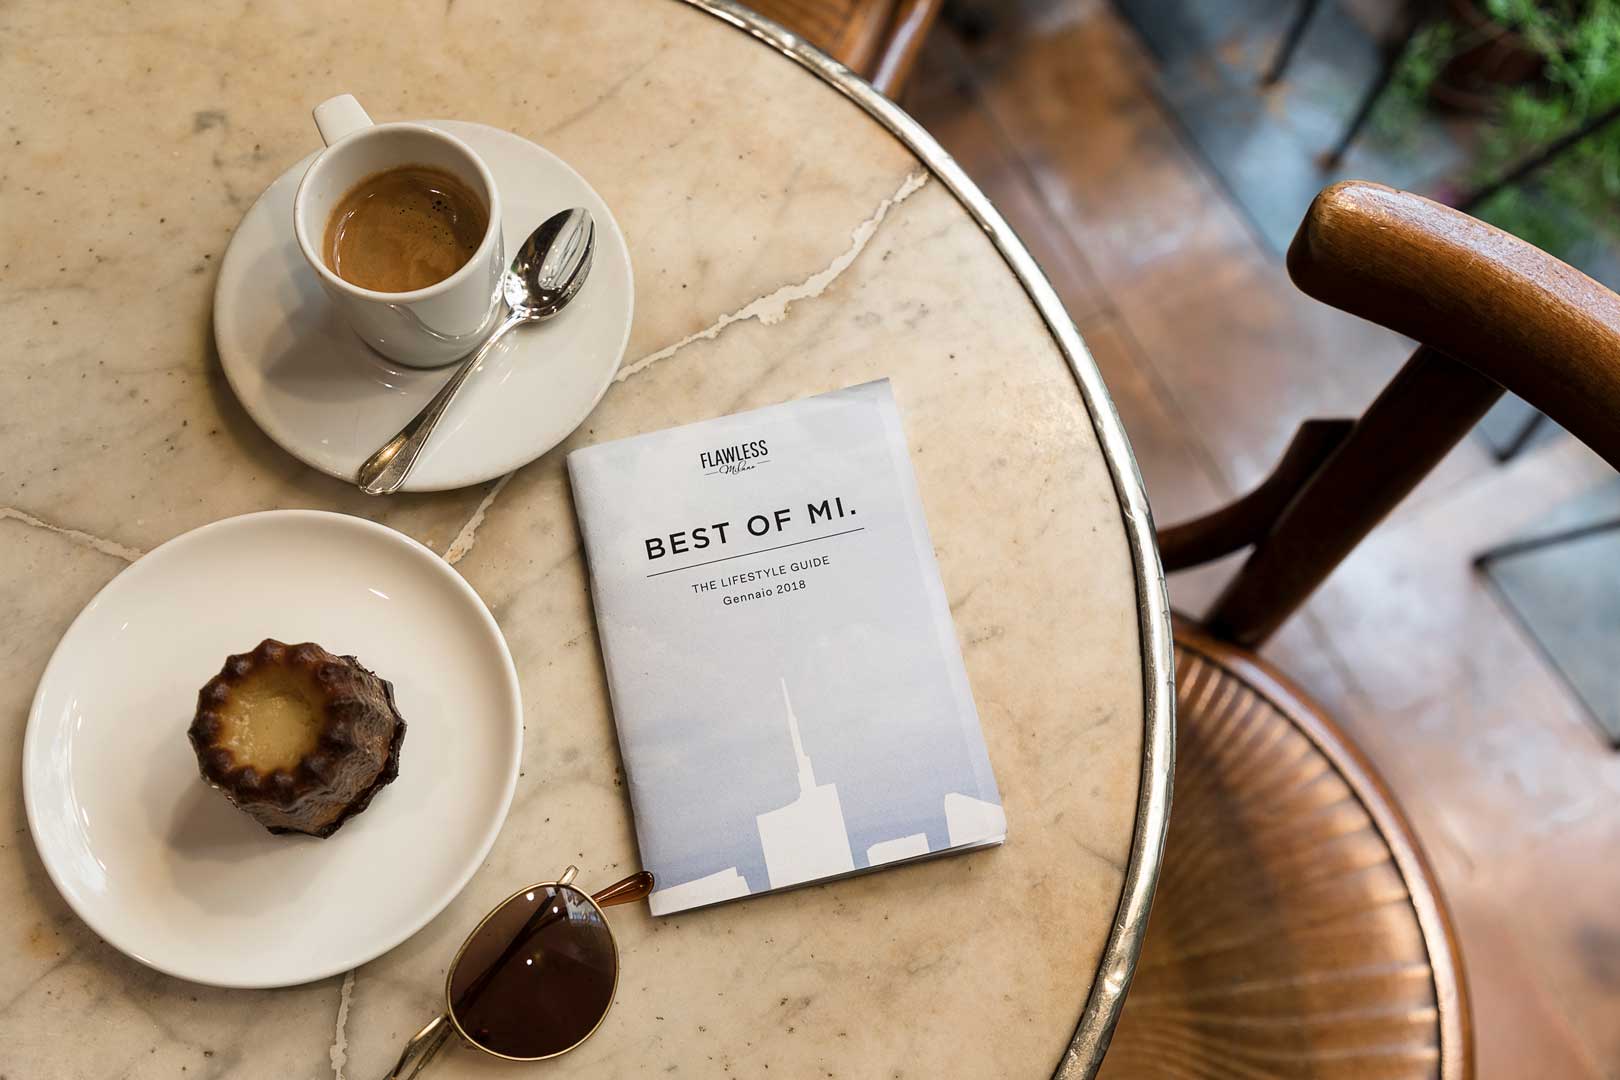 Best of Mi. Gennaio 2018 - Milano